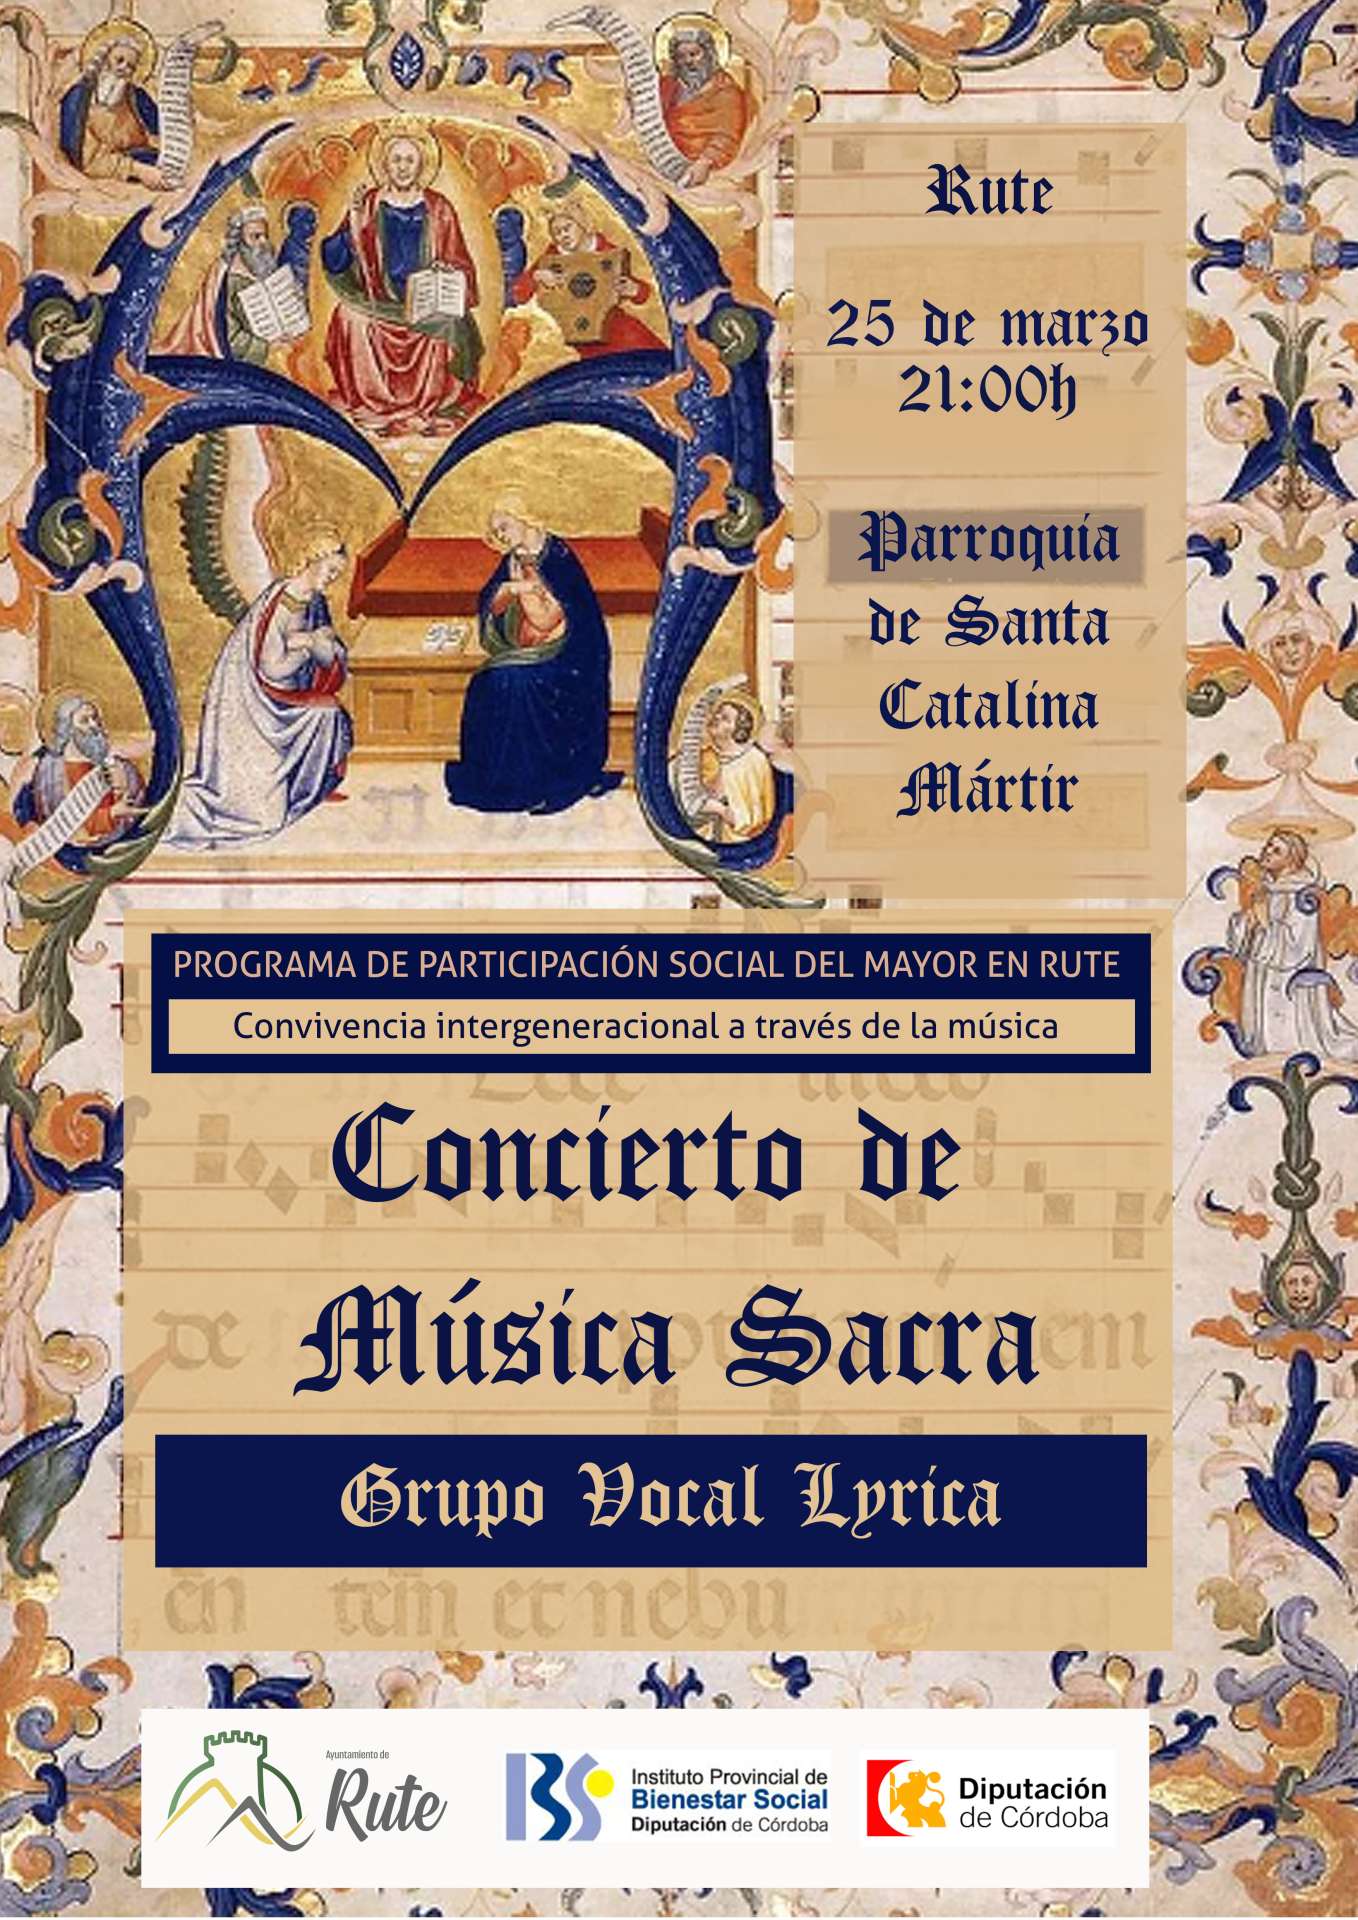 Concierto de Música Sacra